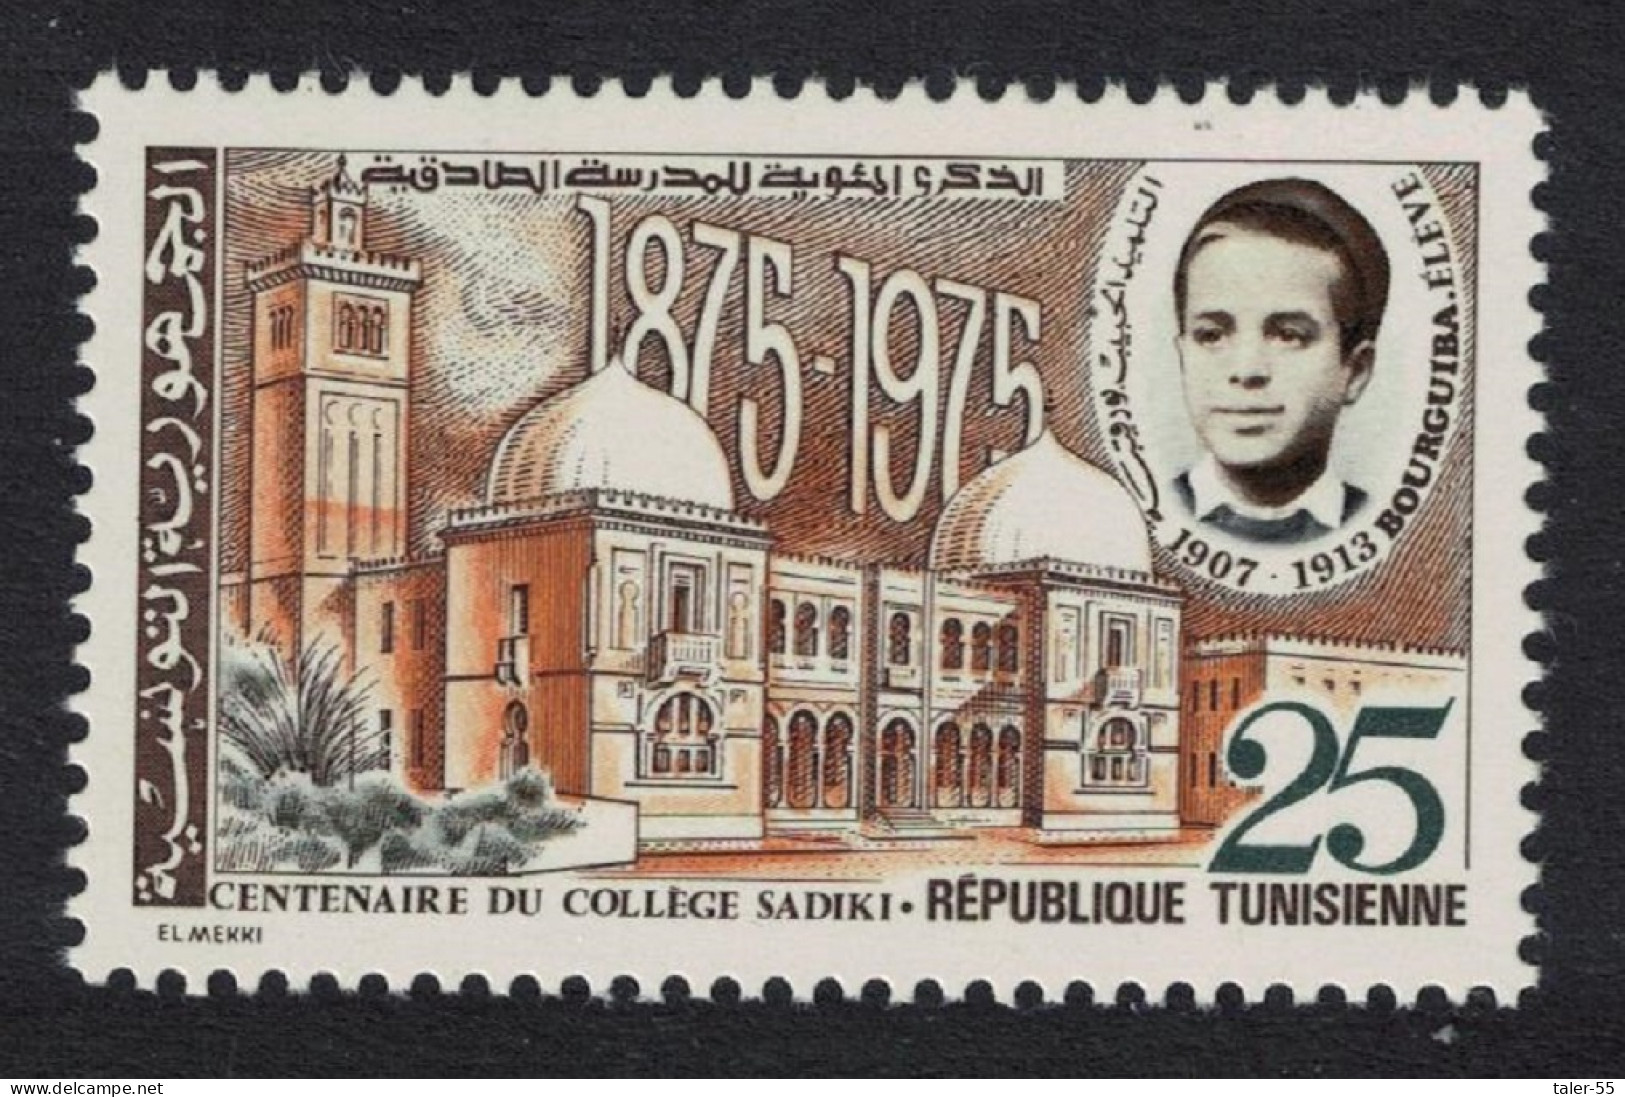 Tunisia Centenary Of Sadiki College 1975 MNH SG#848 Sc#667 - Tunesien (1956-...)